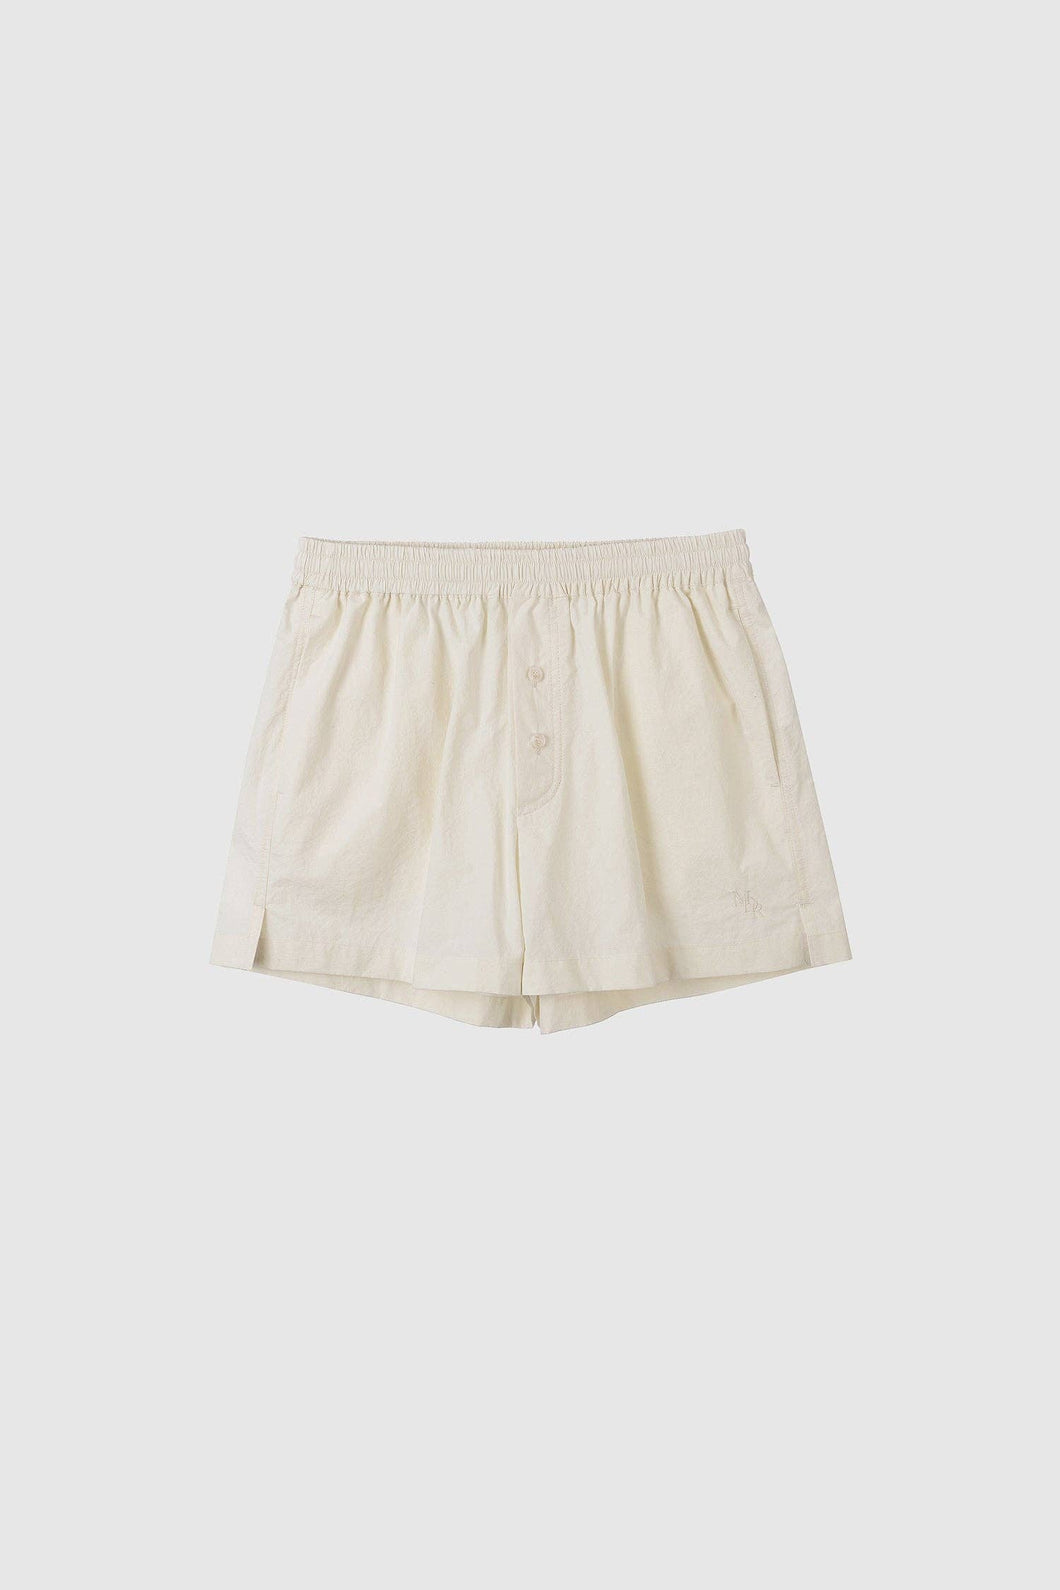 Crispy Cotton Boxer Shorts